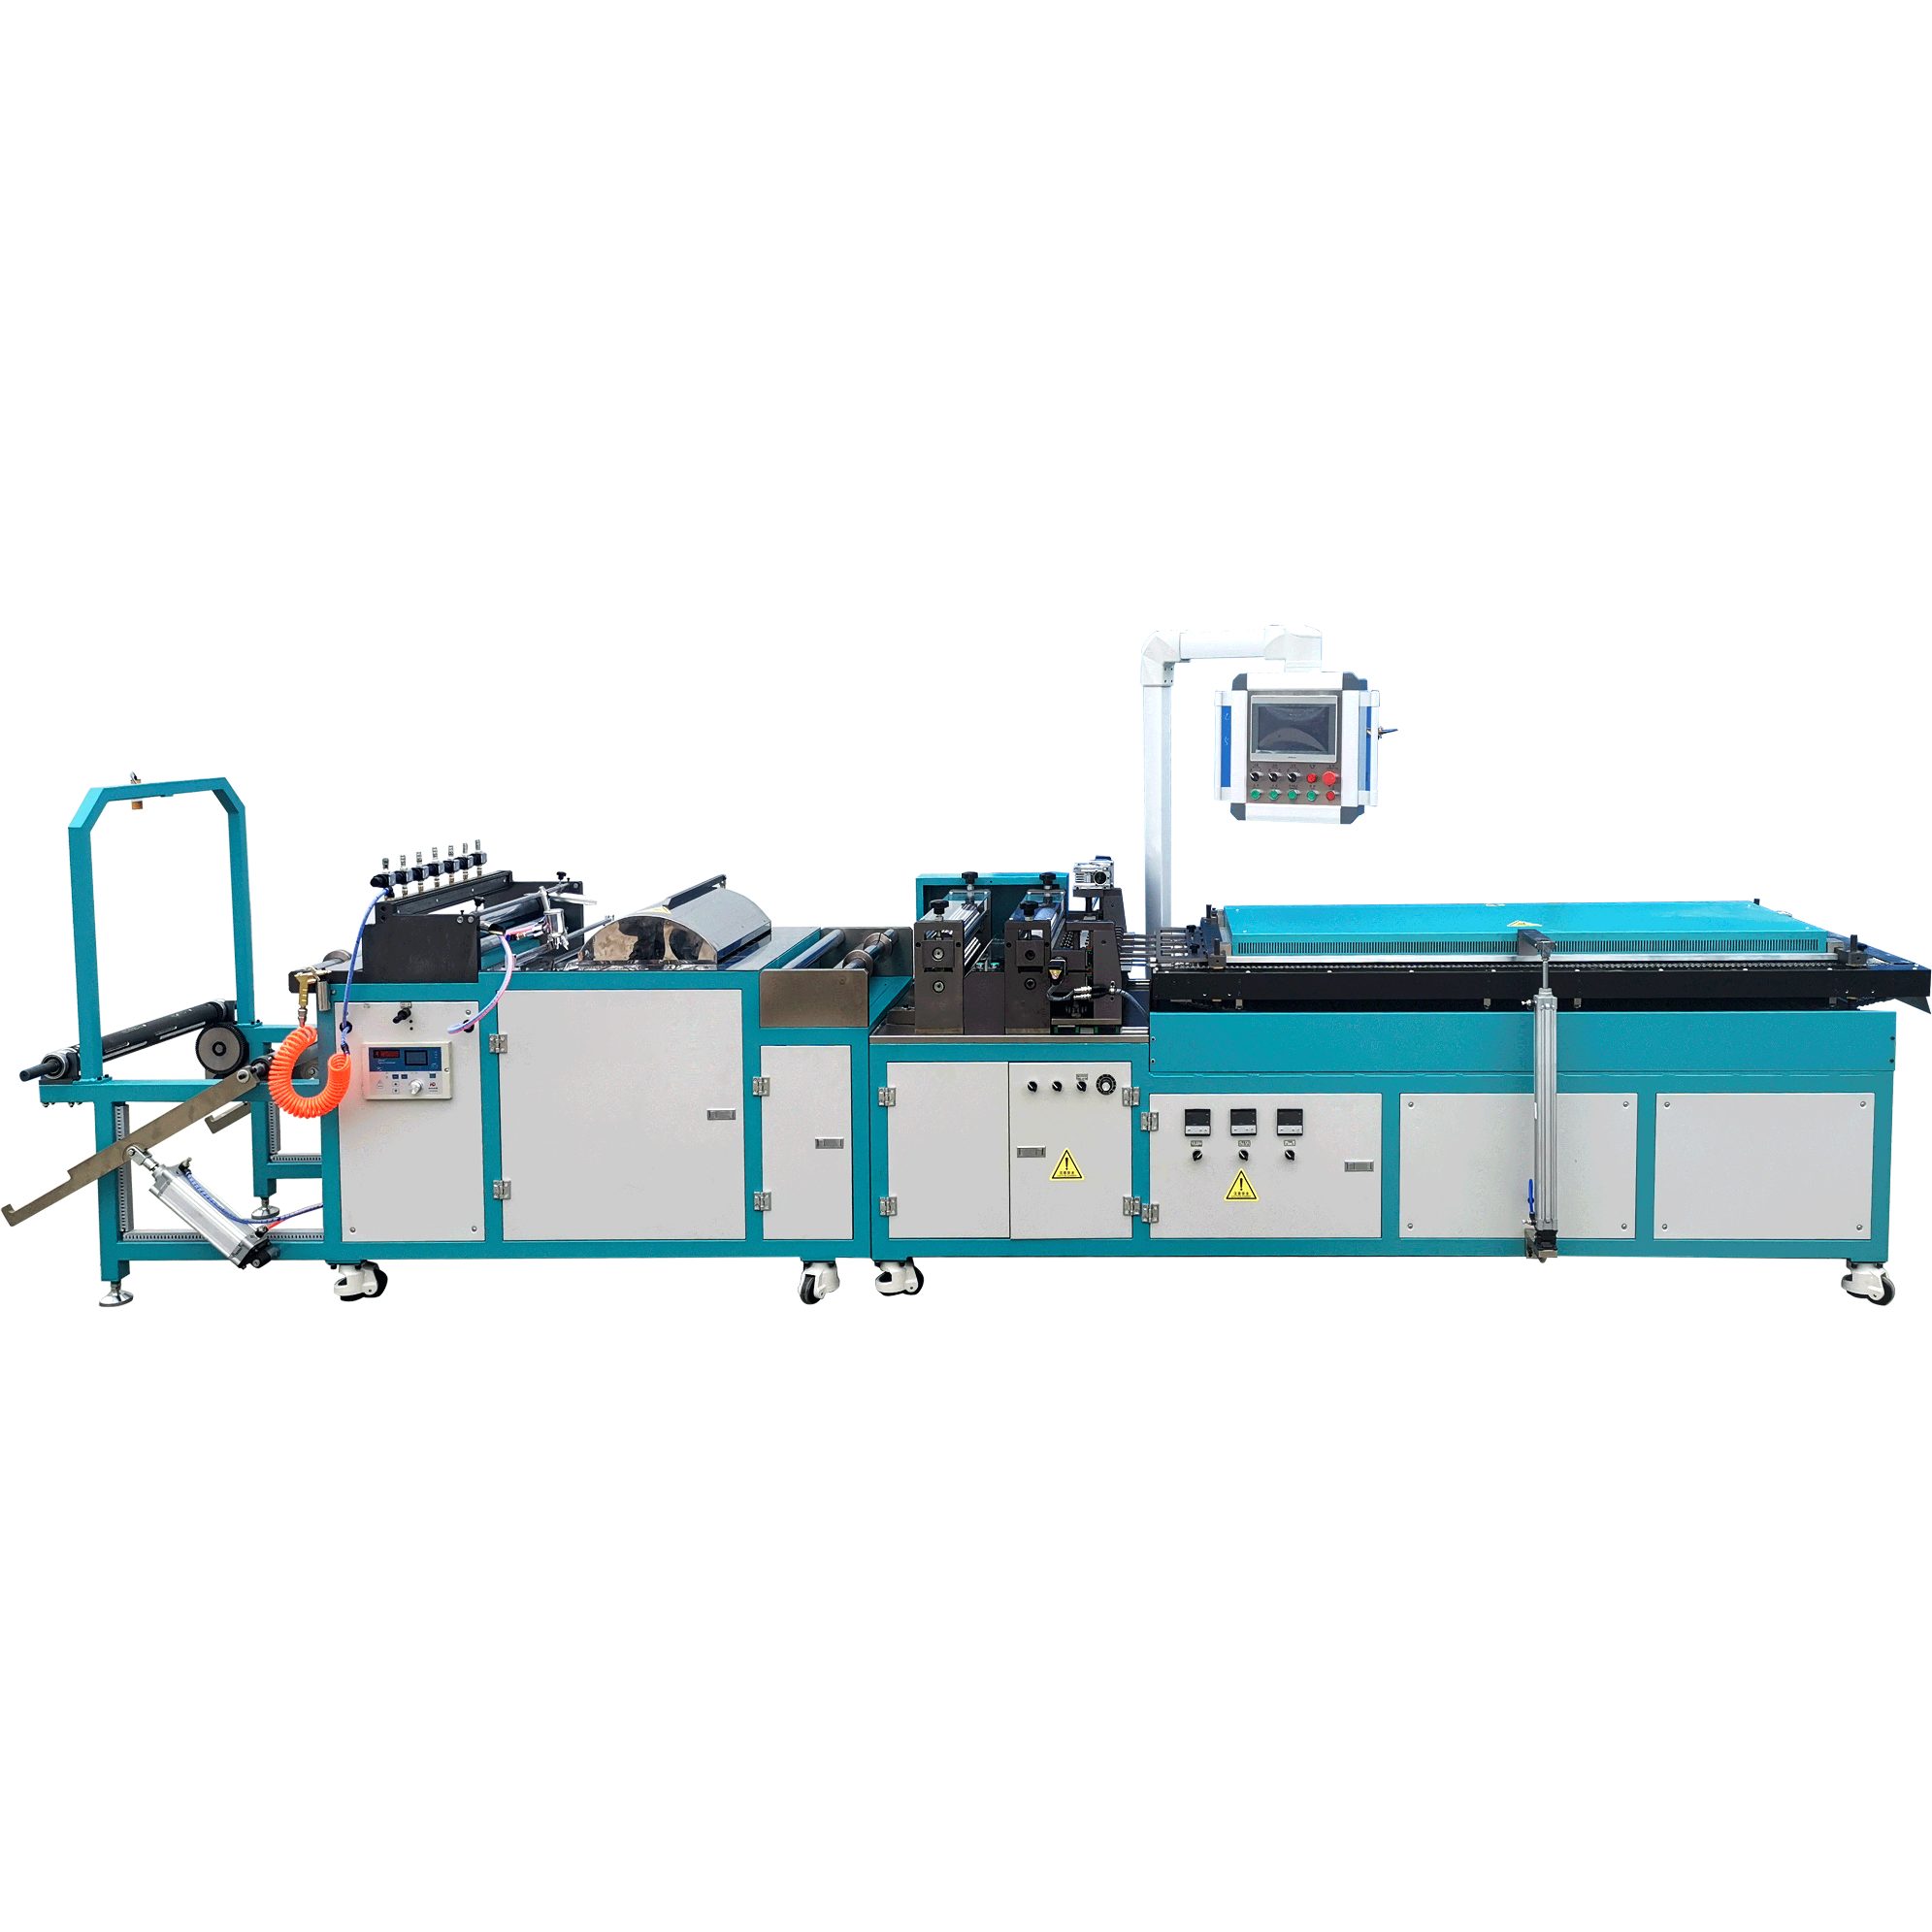 Yağ filtresi katlama makinesi (6-550)